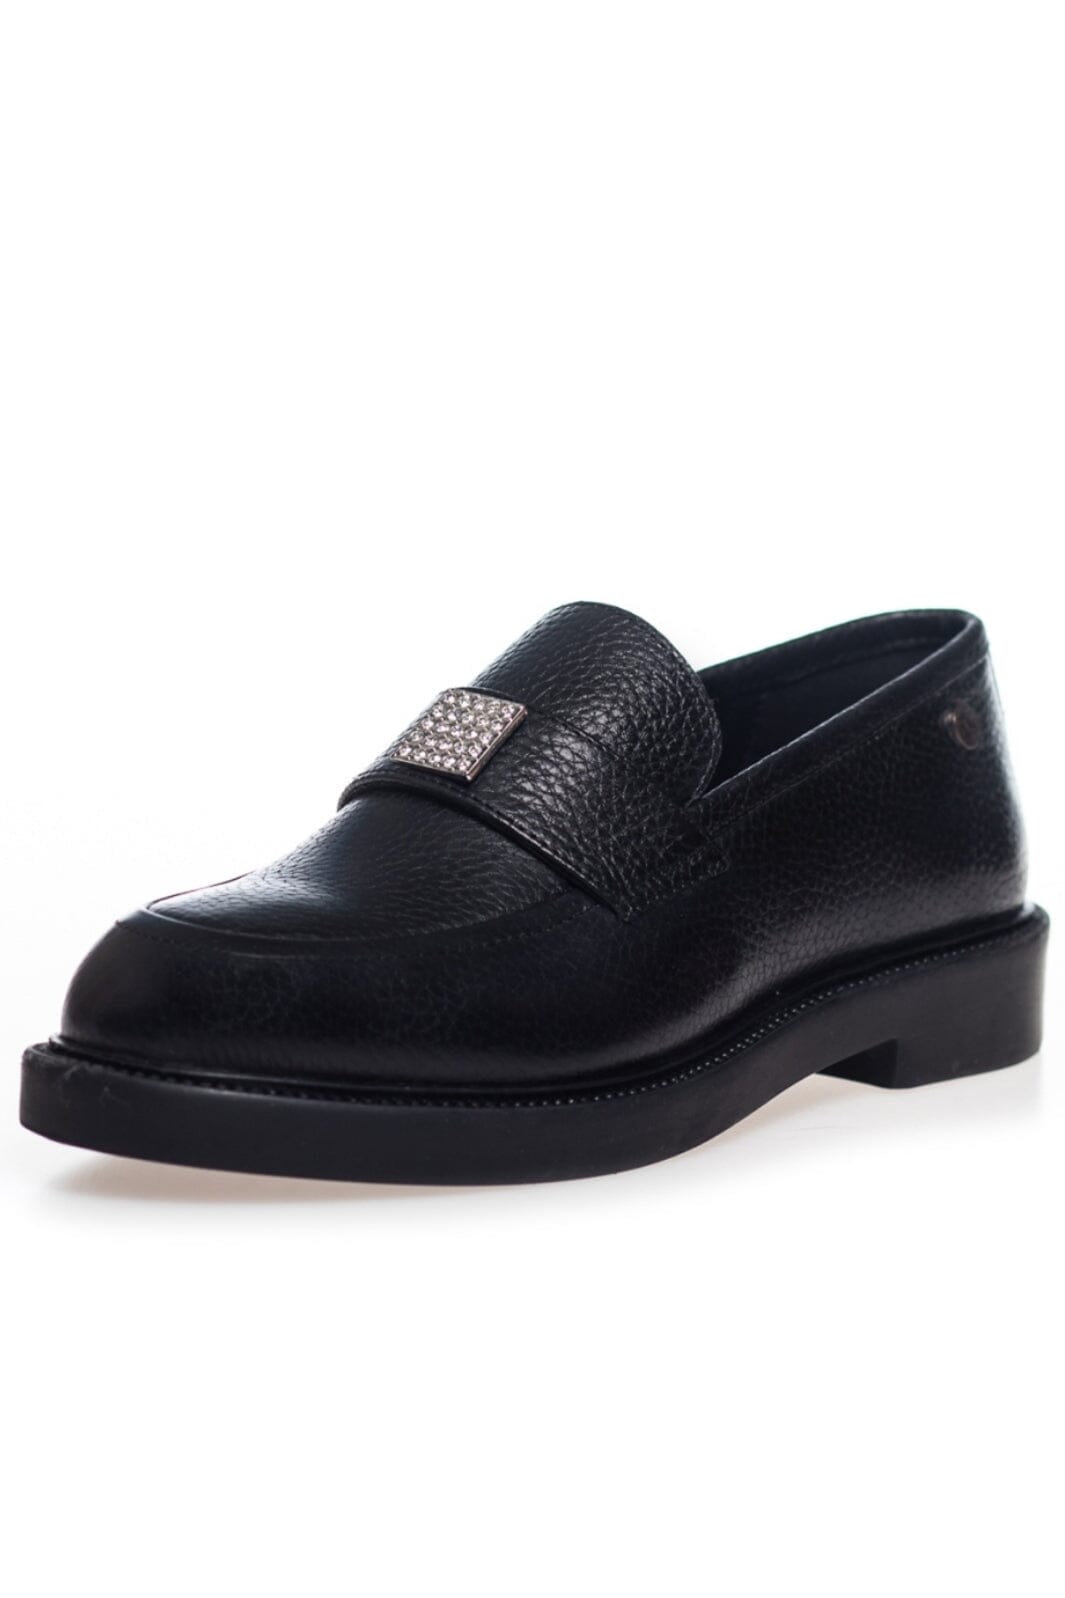 Copenhagen Shoes - Carry Me - Black Loafers 